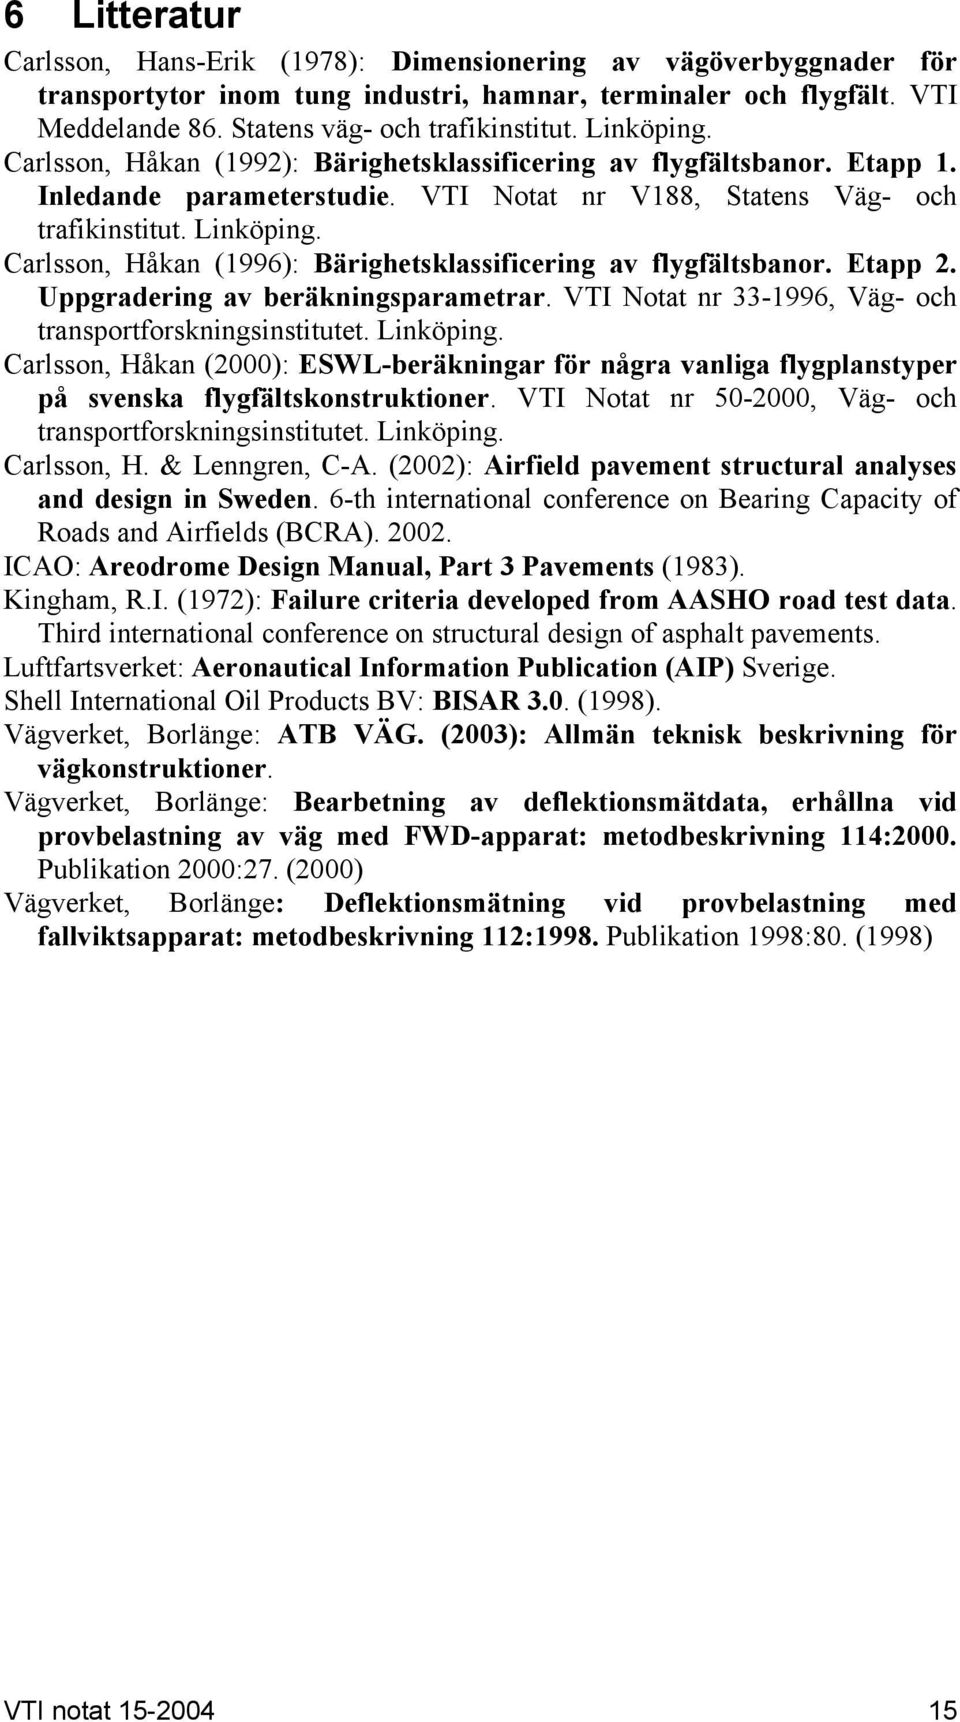 Carlsson, Håkan (1996): Bärighetsklassificering av flygfältsbanor. Etapp 2. Uppgradering av beräkningsparametrar. VTI Notat nr 33-1996, Väg- och transportforskningsinstitutet. Linköping.